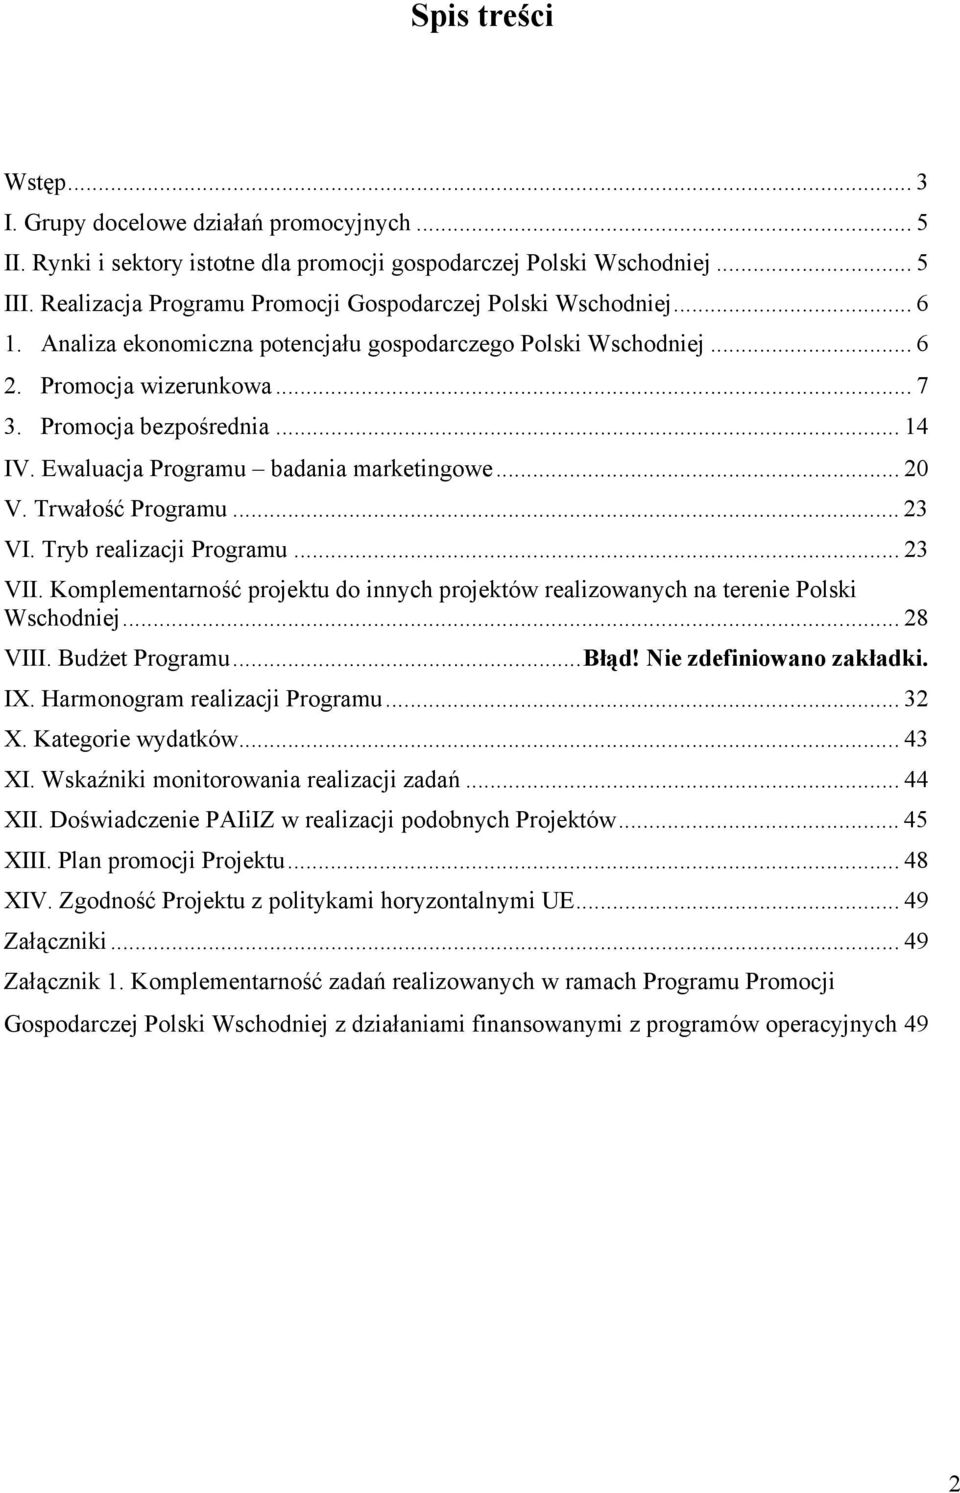 Trwałość Programu... 23 VI. Tryb realizacji Programu... 23 VII. Komplementarność projektu do innych projektów realizowanych na terenie Polski Wschodniej... 28 VIII. Budżet Programu...Błąd!